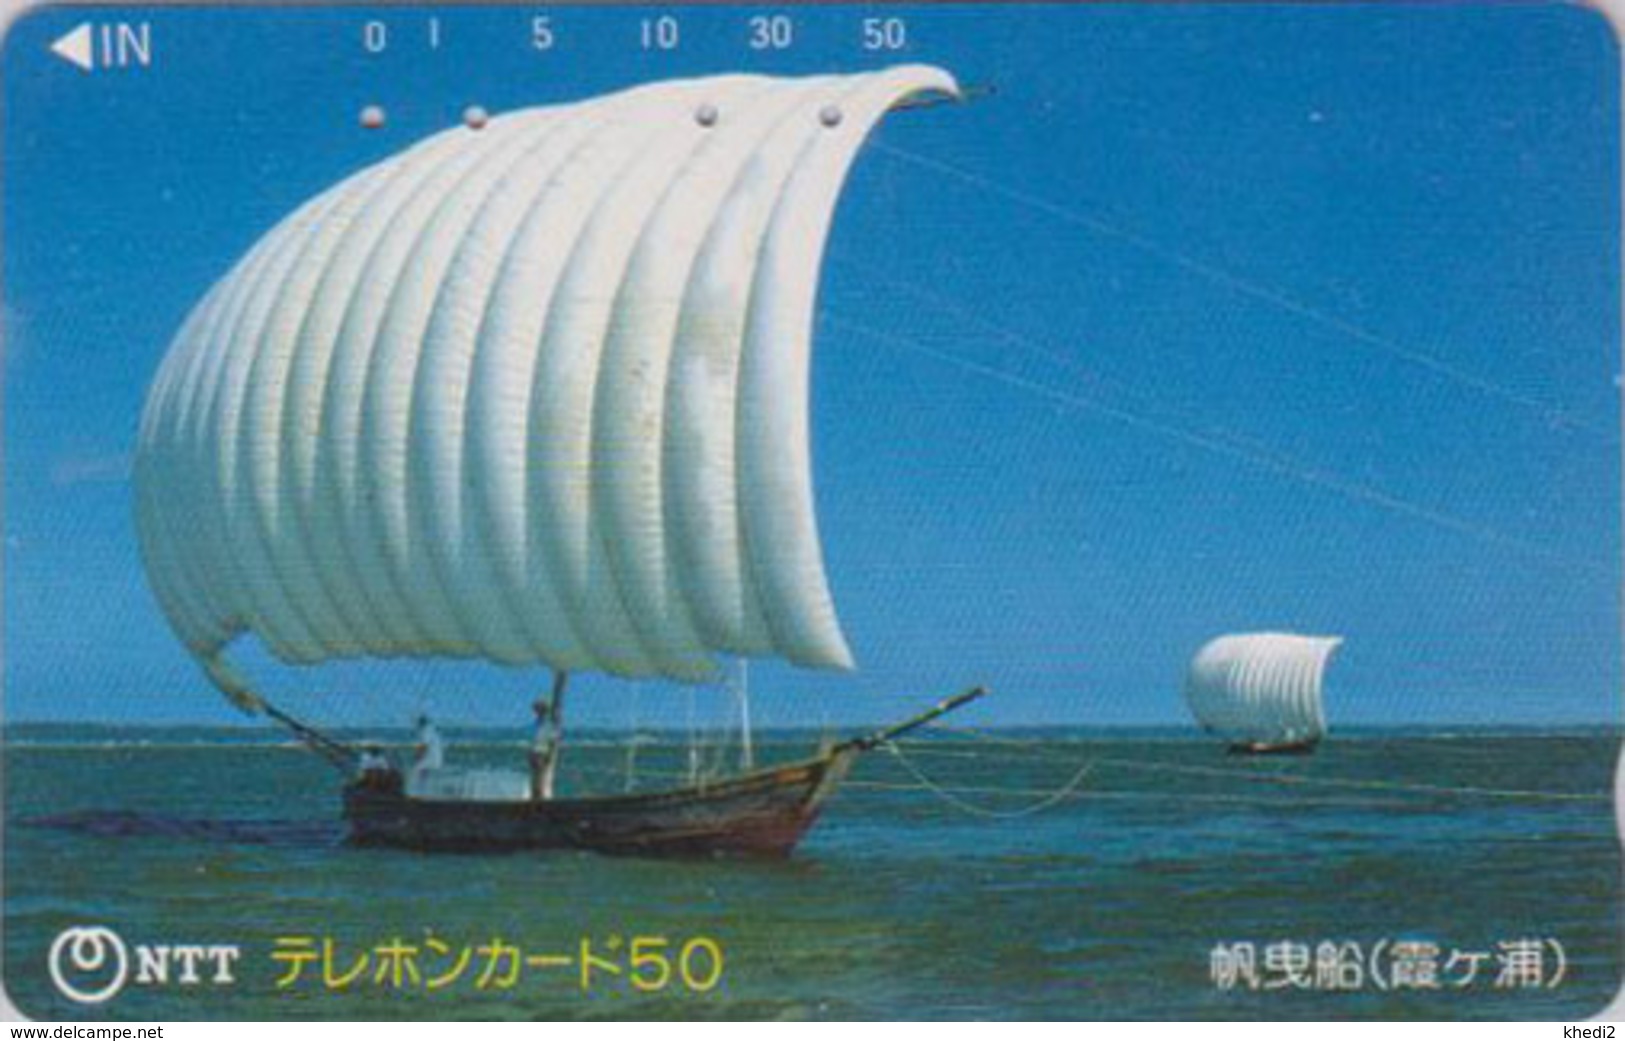 Télécarte Japon / NTT 250-111 - BATEAU Voilier - Sailing SHIP Japan Phonecard - SCHIFF - Bateaux